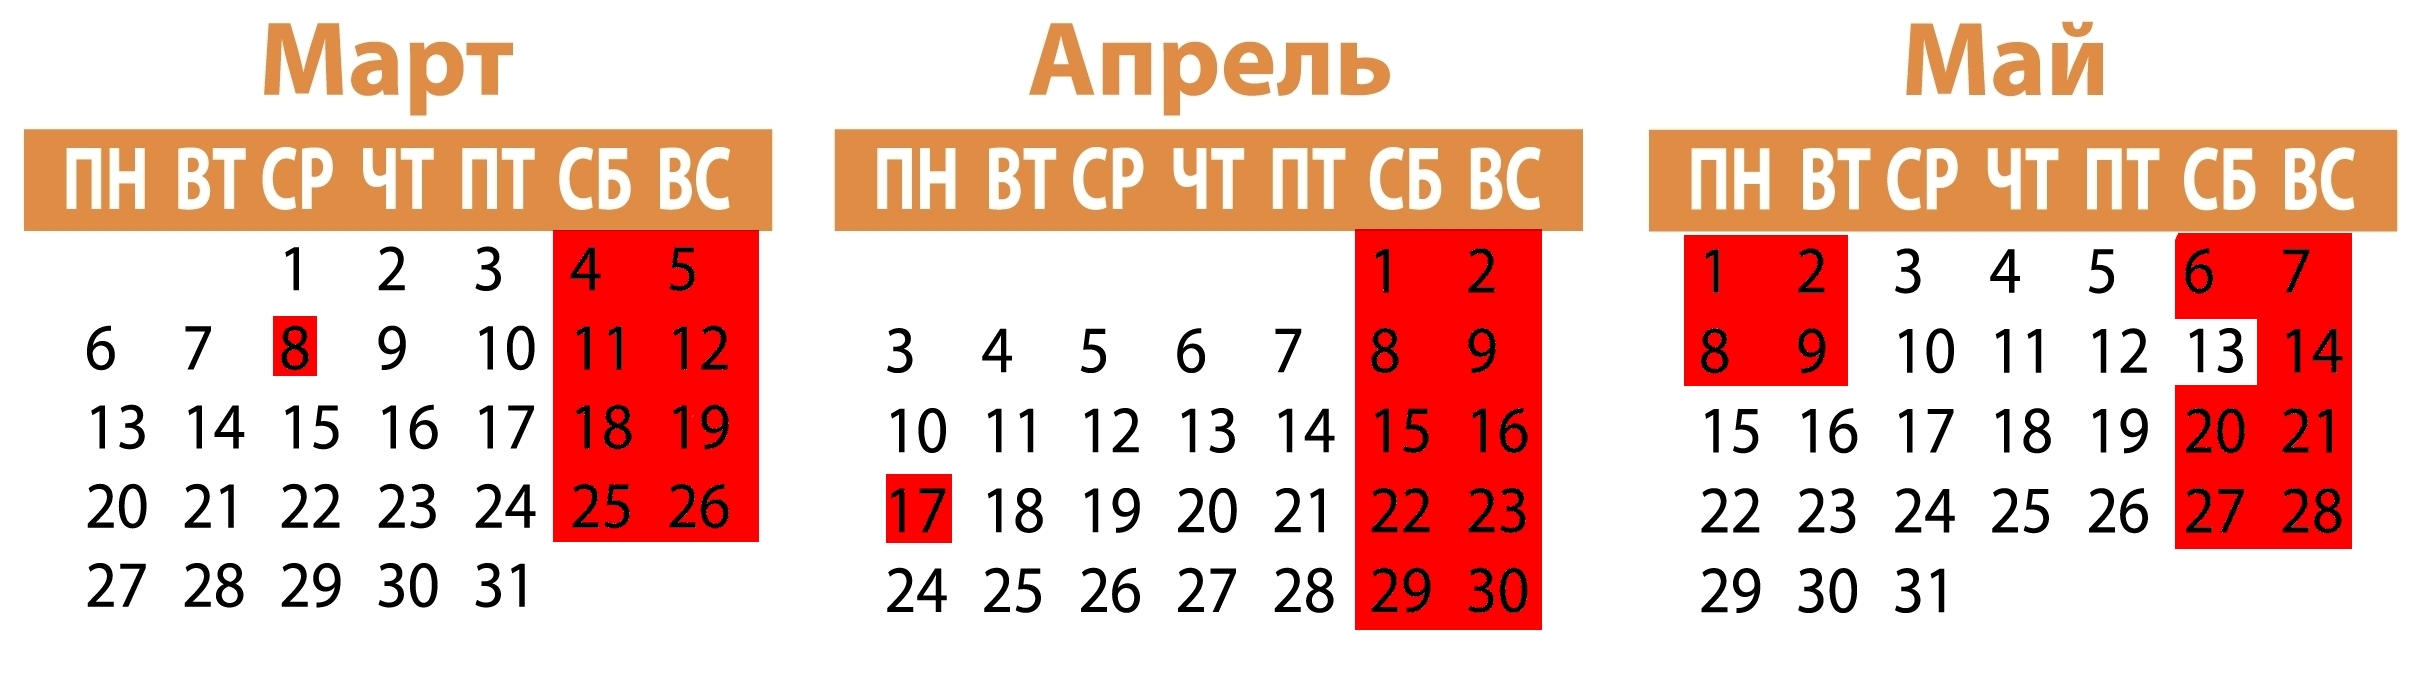 Kalendar_2017_1